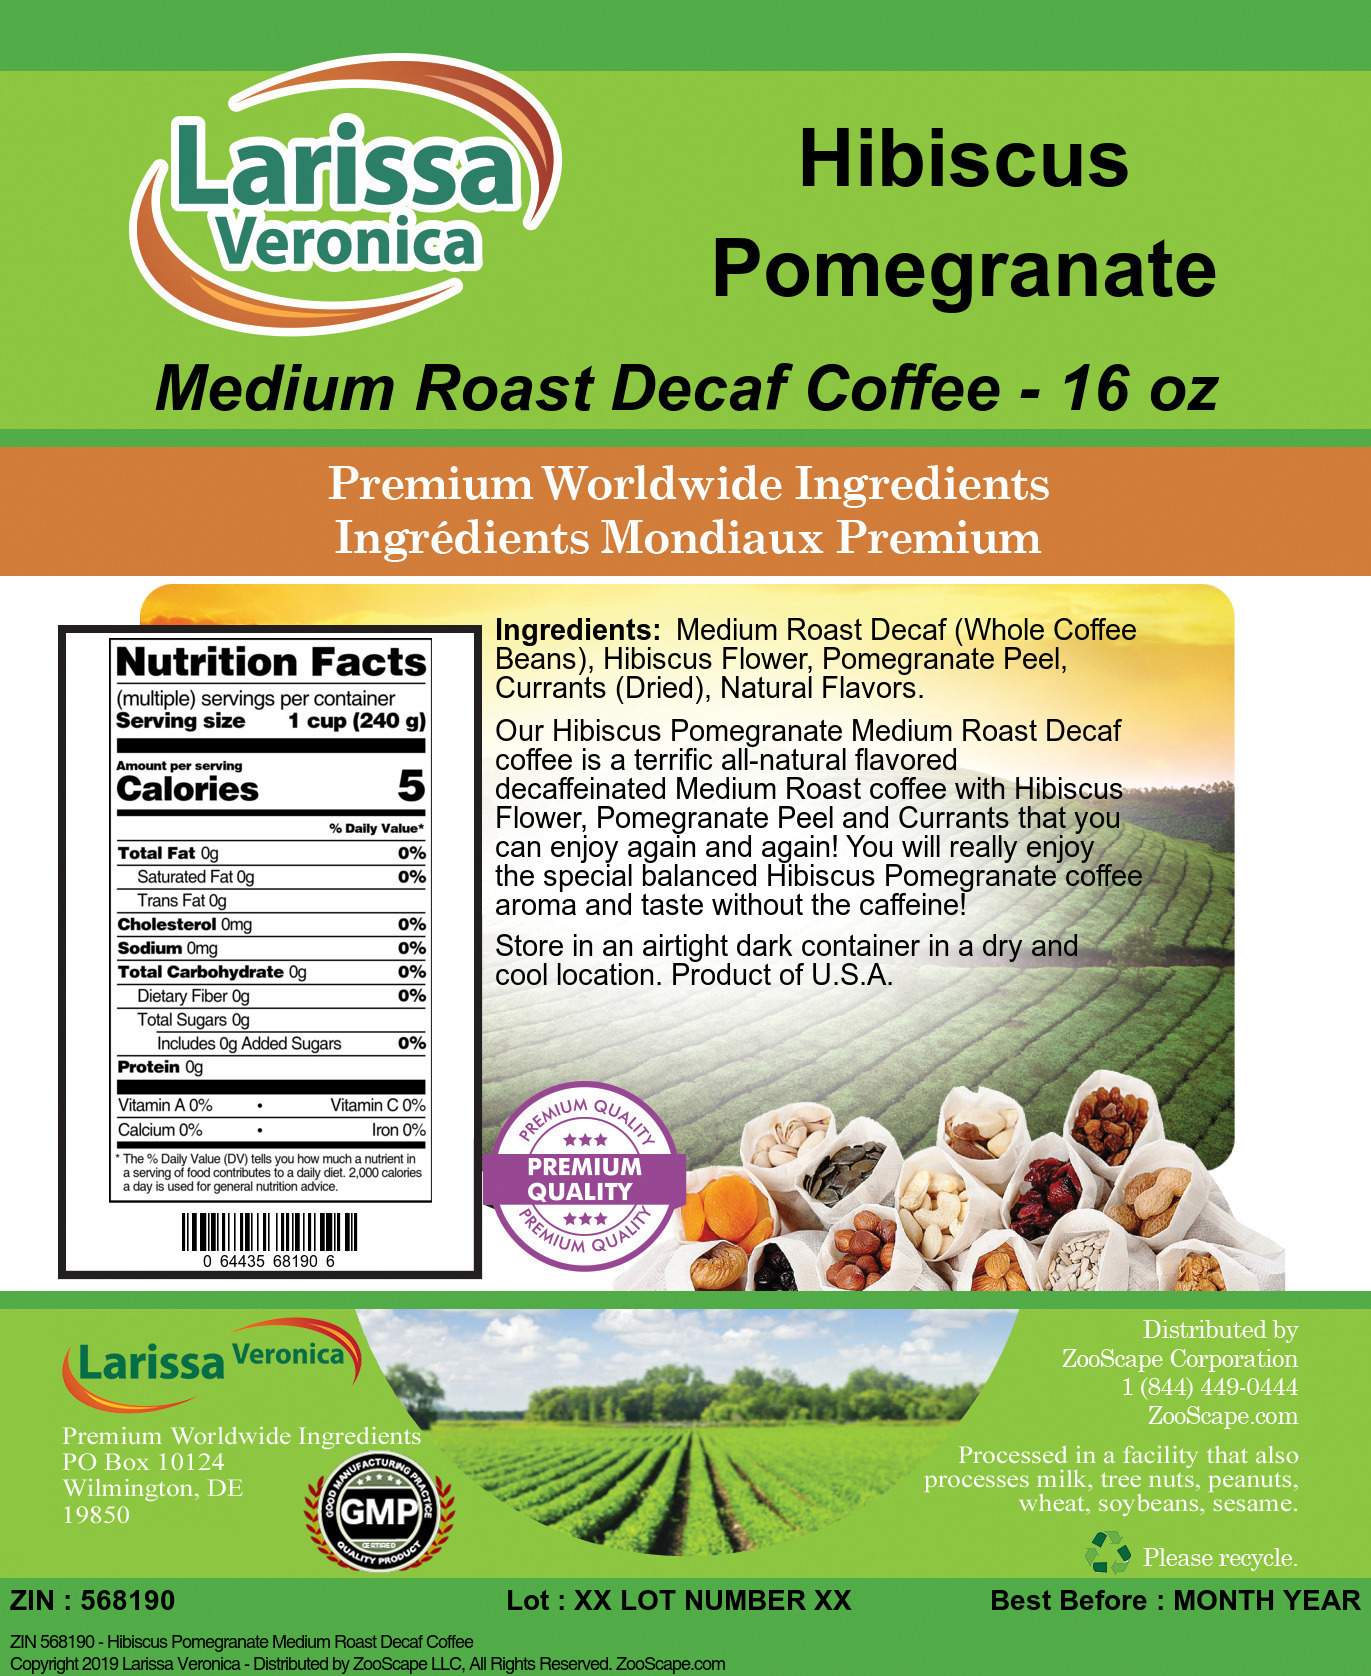 Hibiscus Pomegranate Medium Roast Decaf Coffee - Label